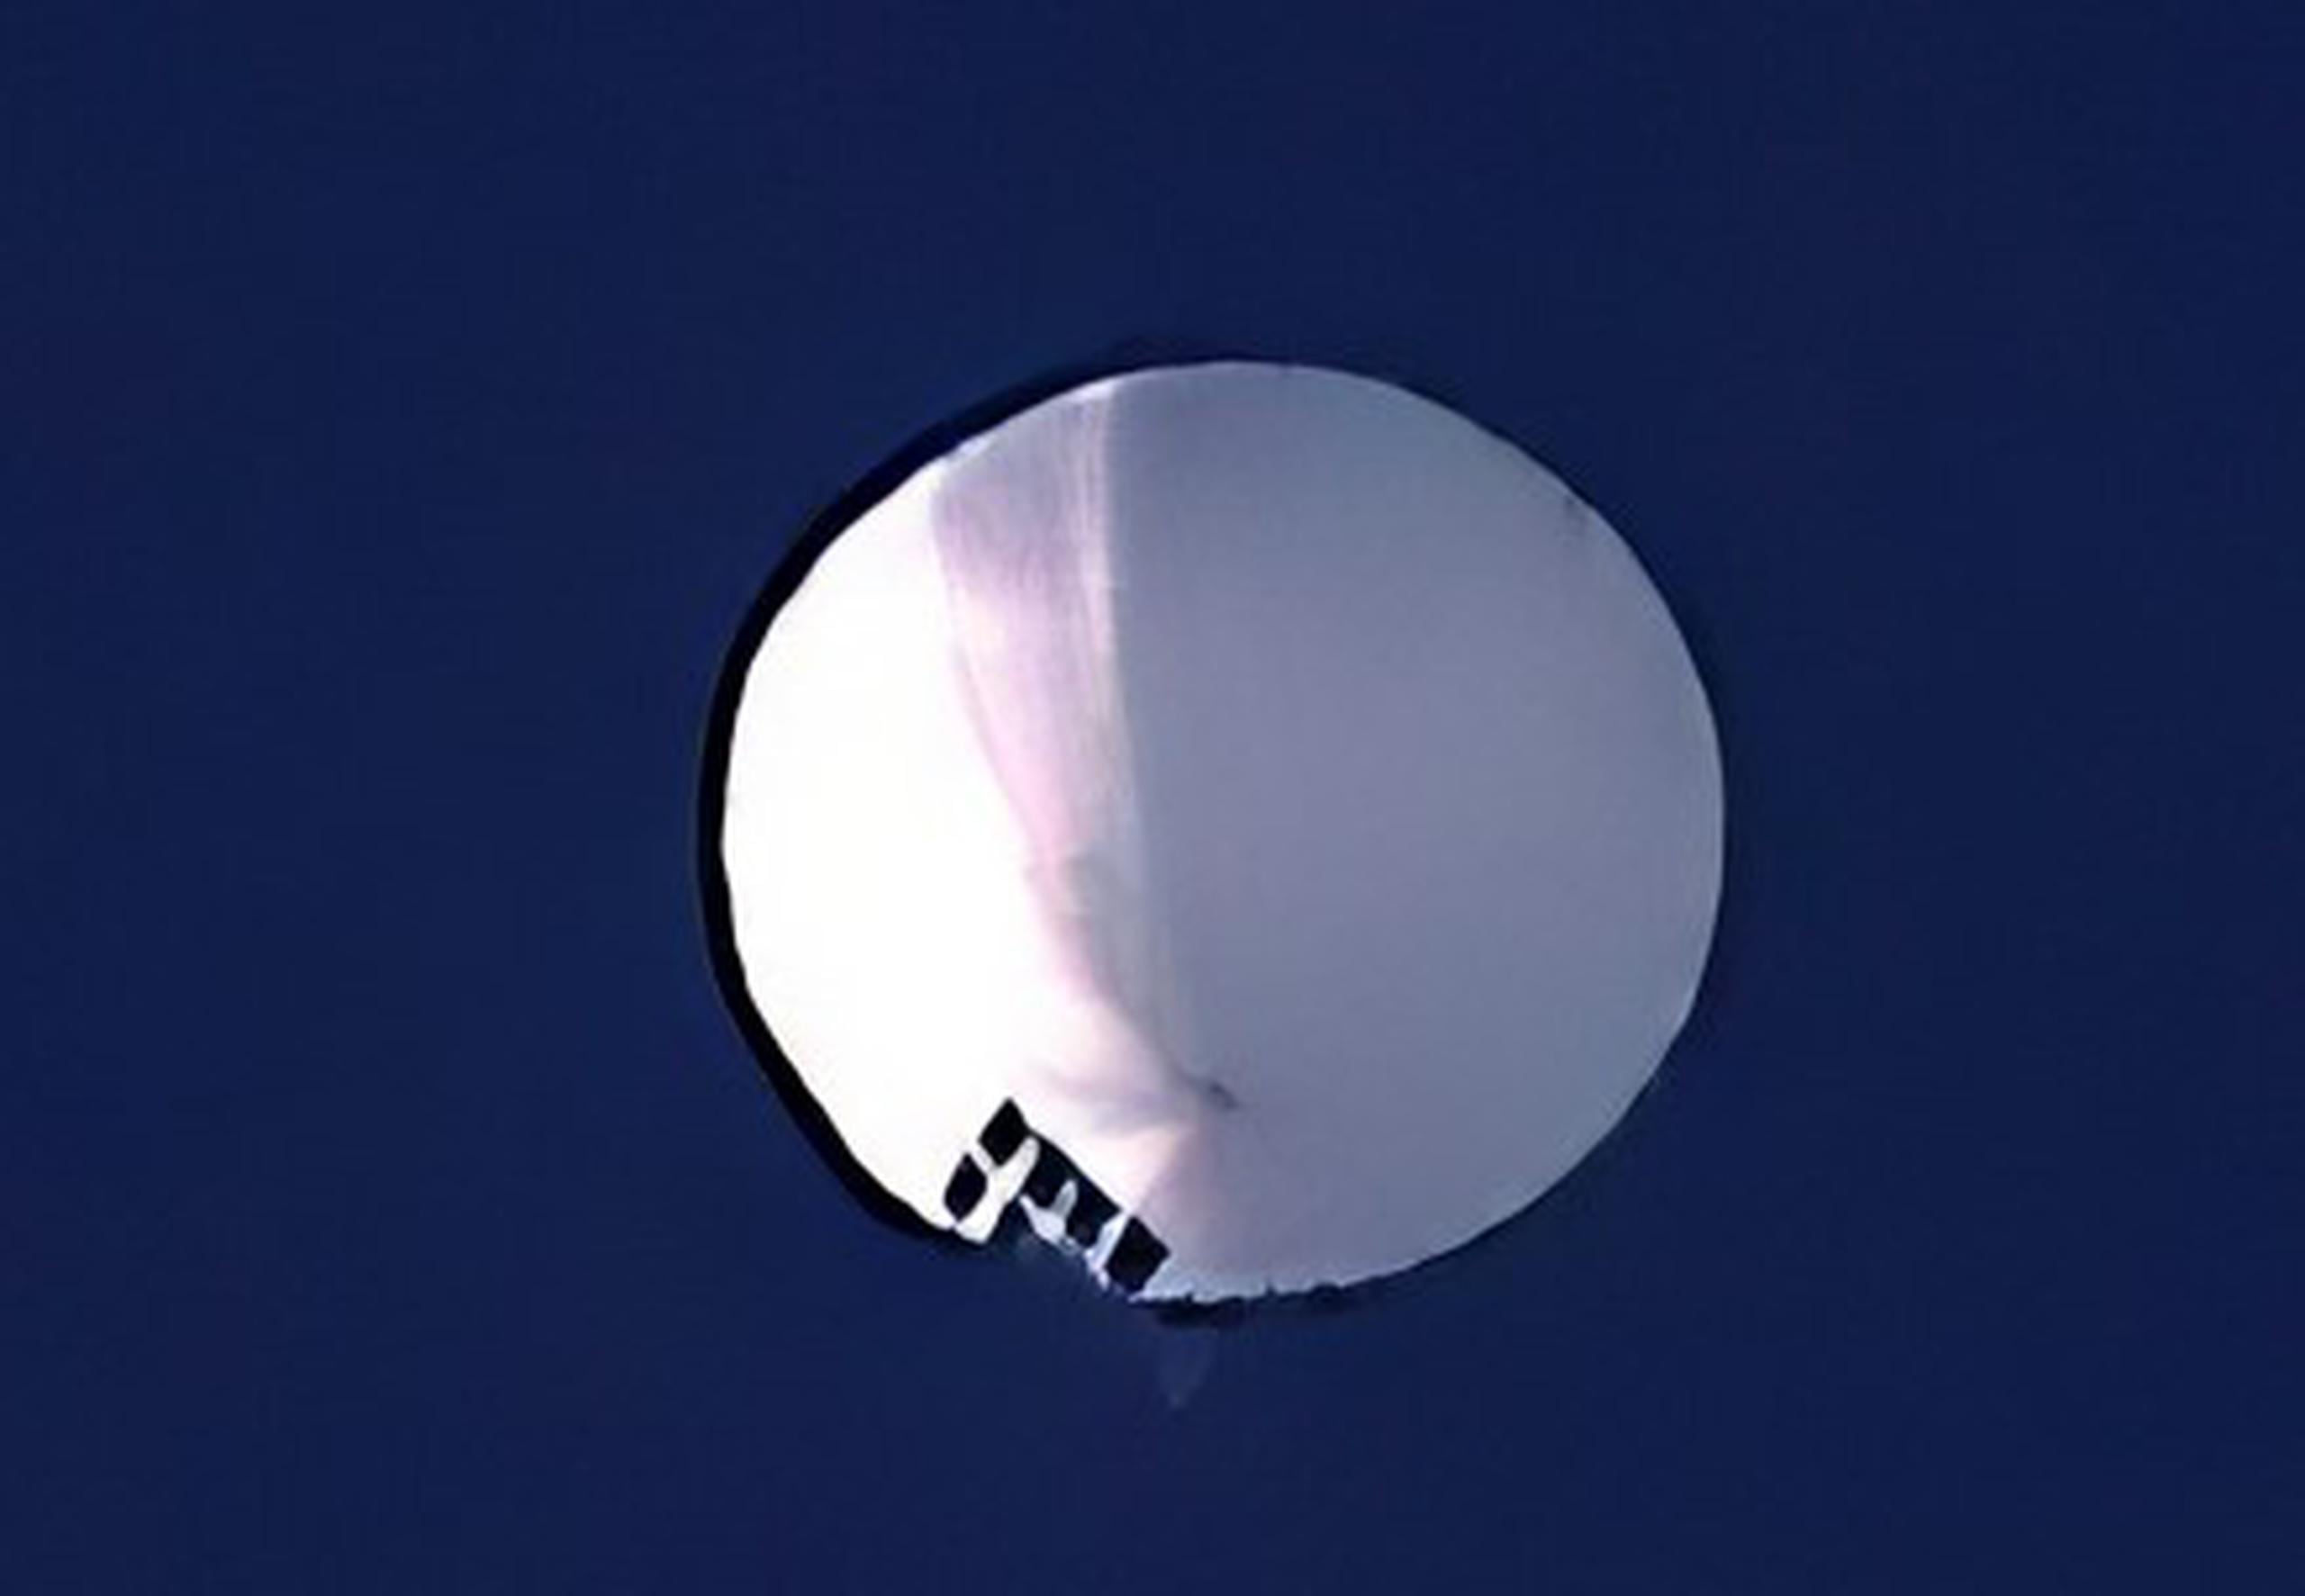 China ha dicho que se trata de un globo de medición meteorológico que está errante a merced de los vientos.